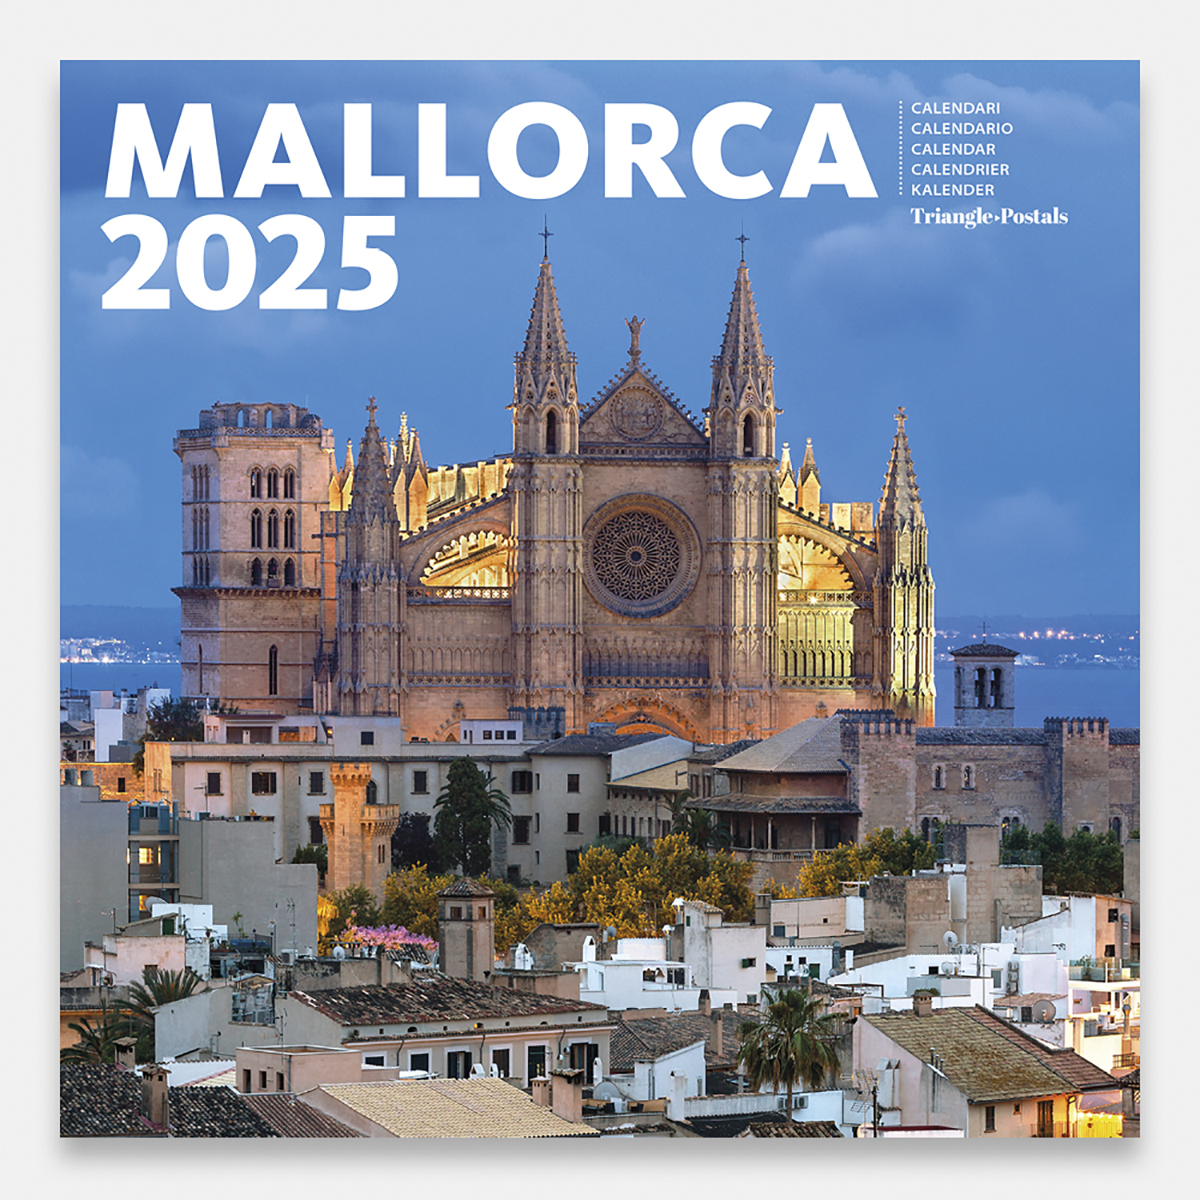 Calendario 2025 Mallorca 25mag2 calendario pared 2025 mallorca